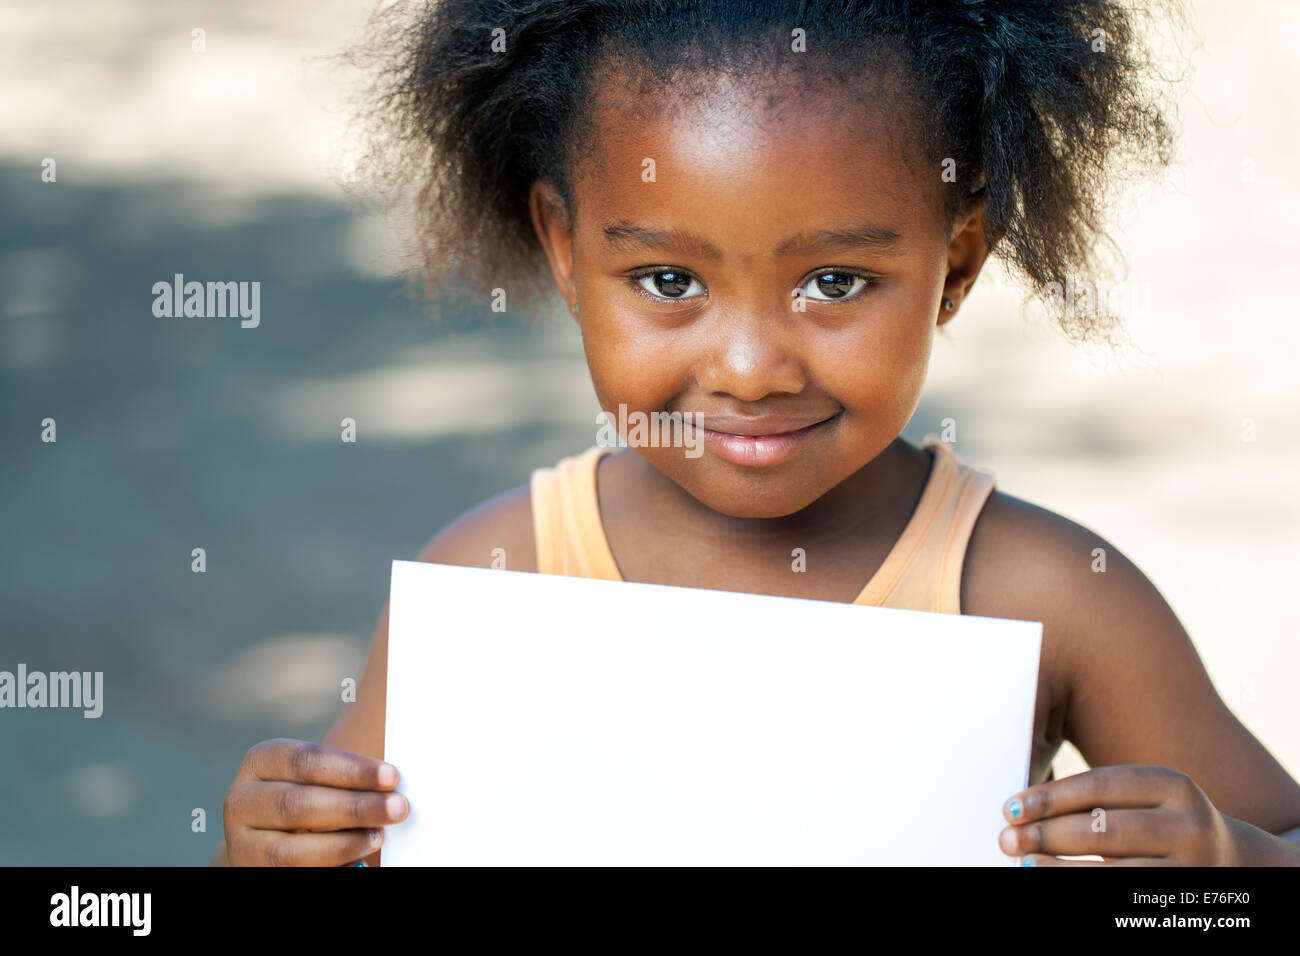 Porträt von netten afrikanischen Mädchen hielt leere weiße Karte im freien hautnah. Stockfoto